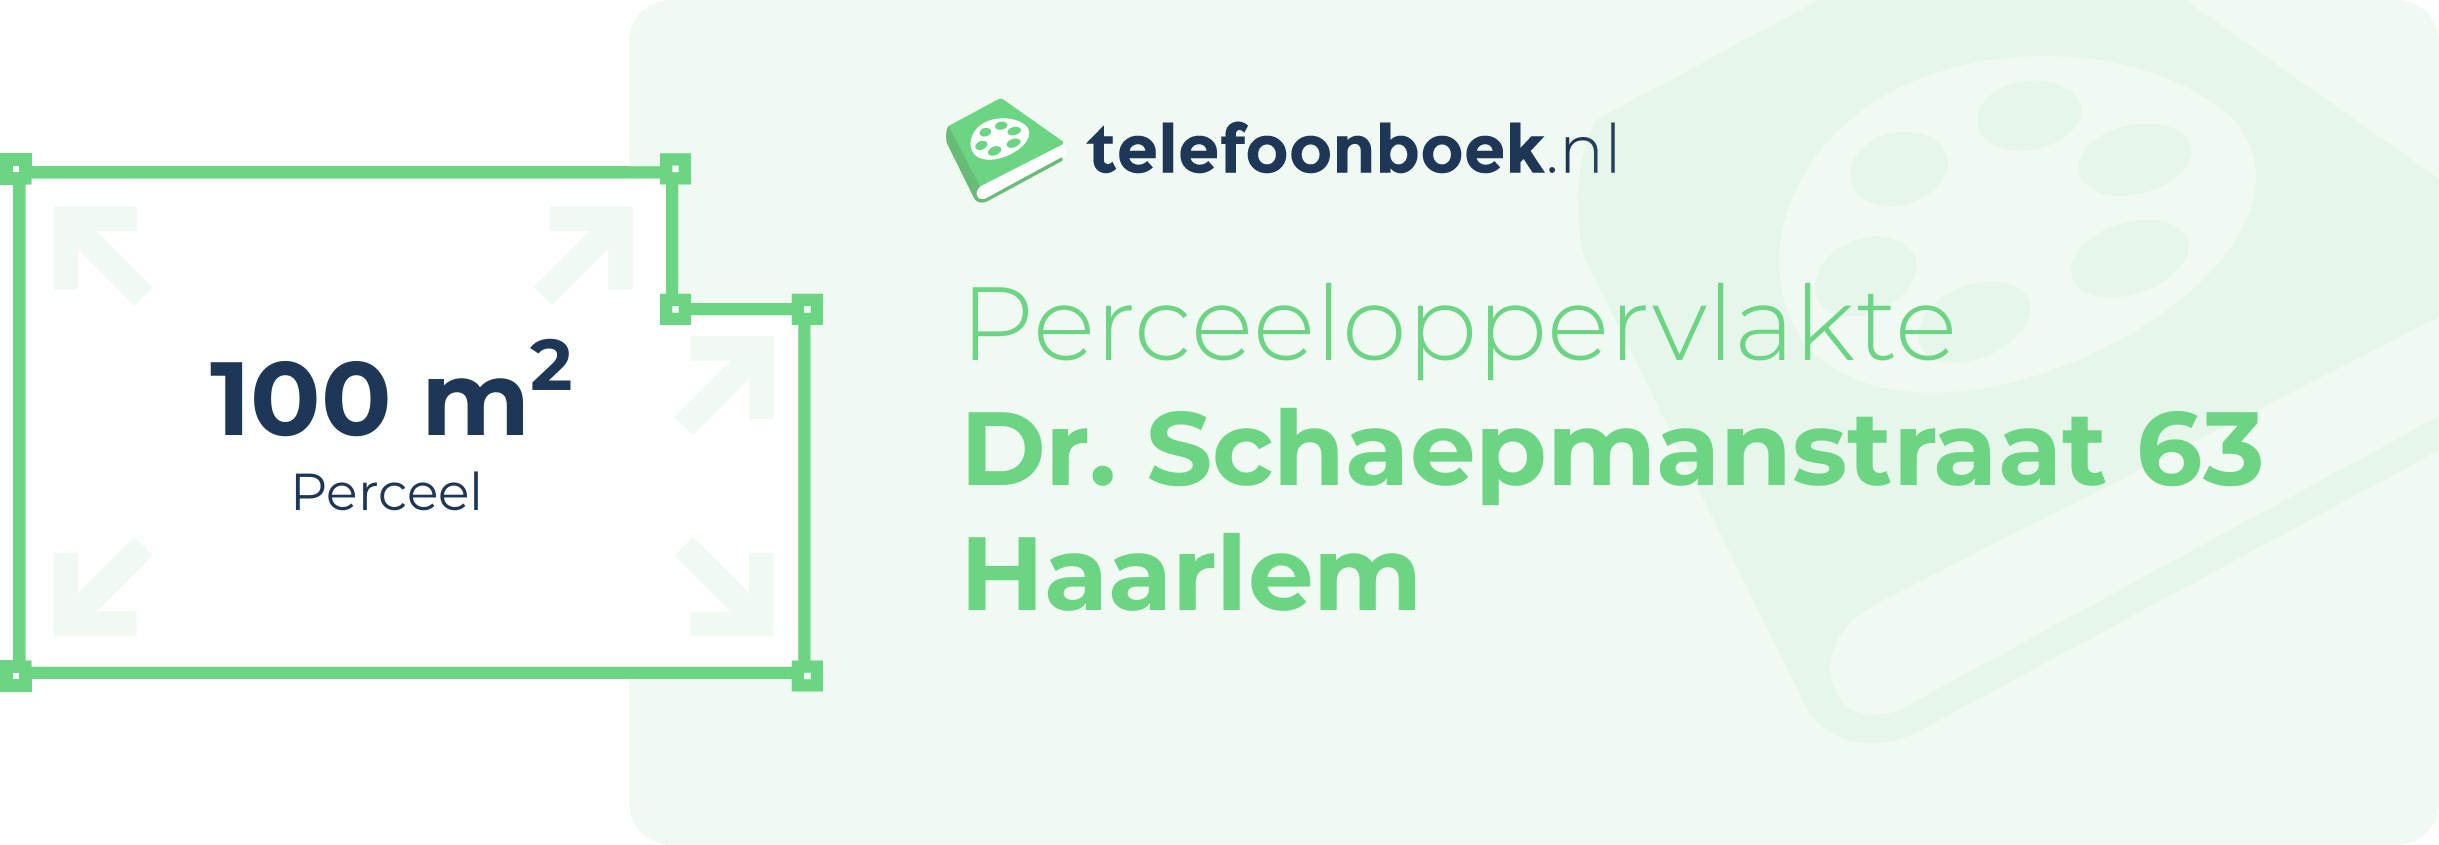 Perceeloppervlakte Dr. Schaepmanstraat 63 Haarlem